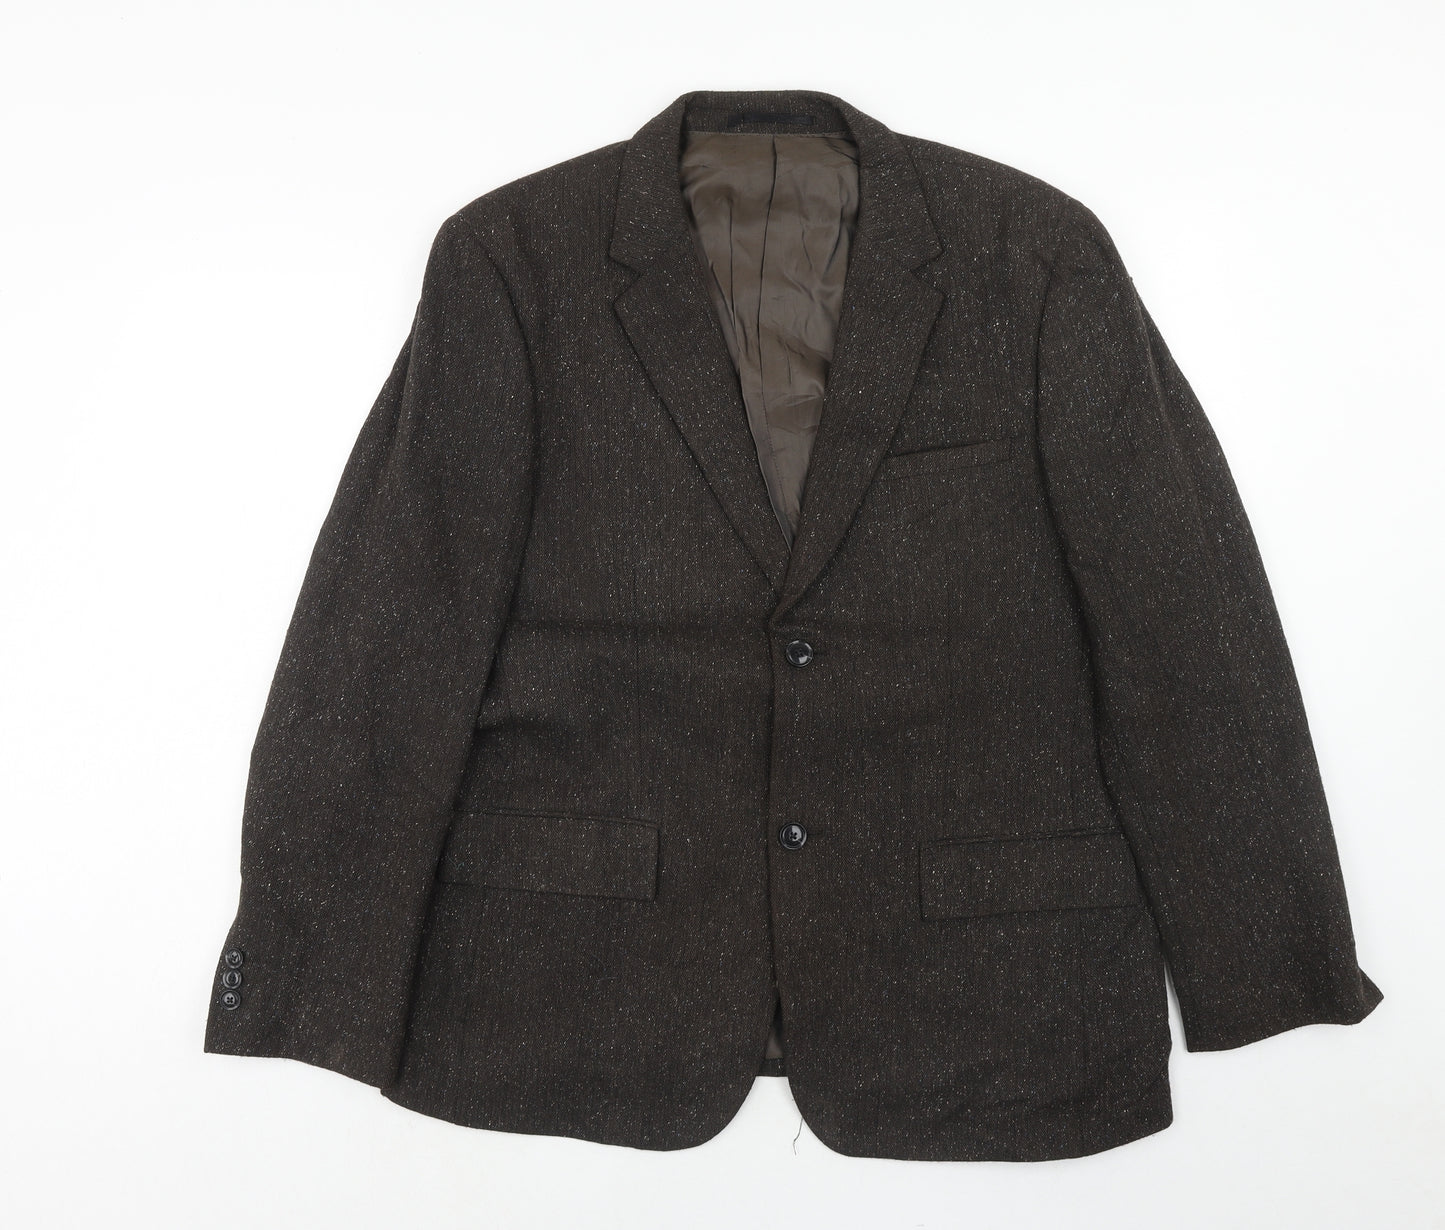 Farah Mens Brown Wool Jacket Blazer Size 42 Regular